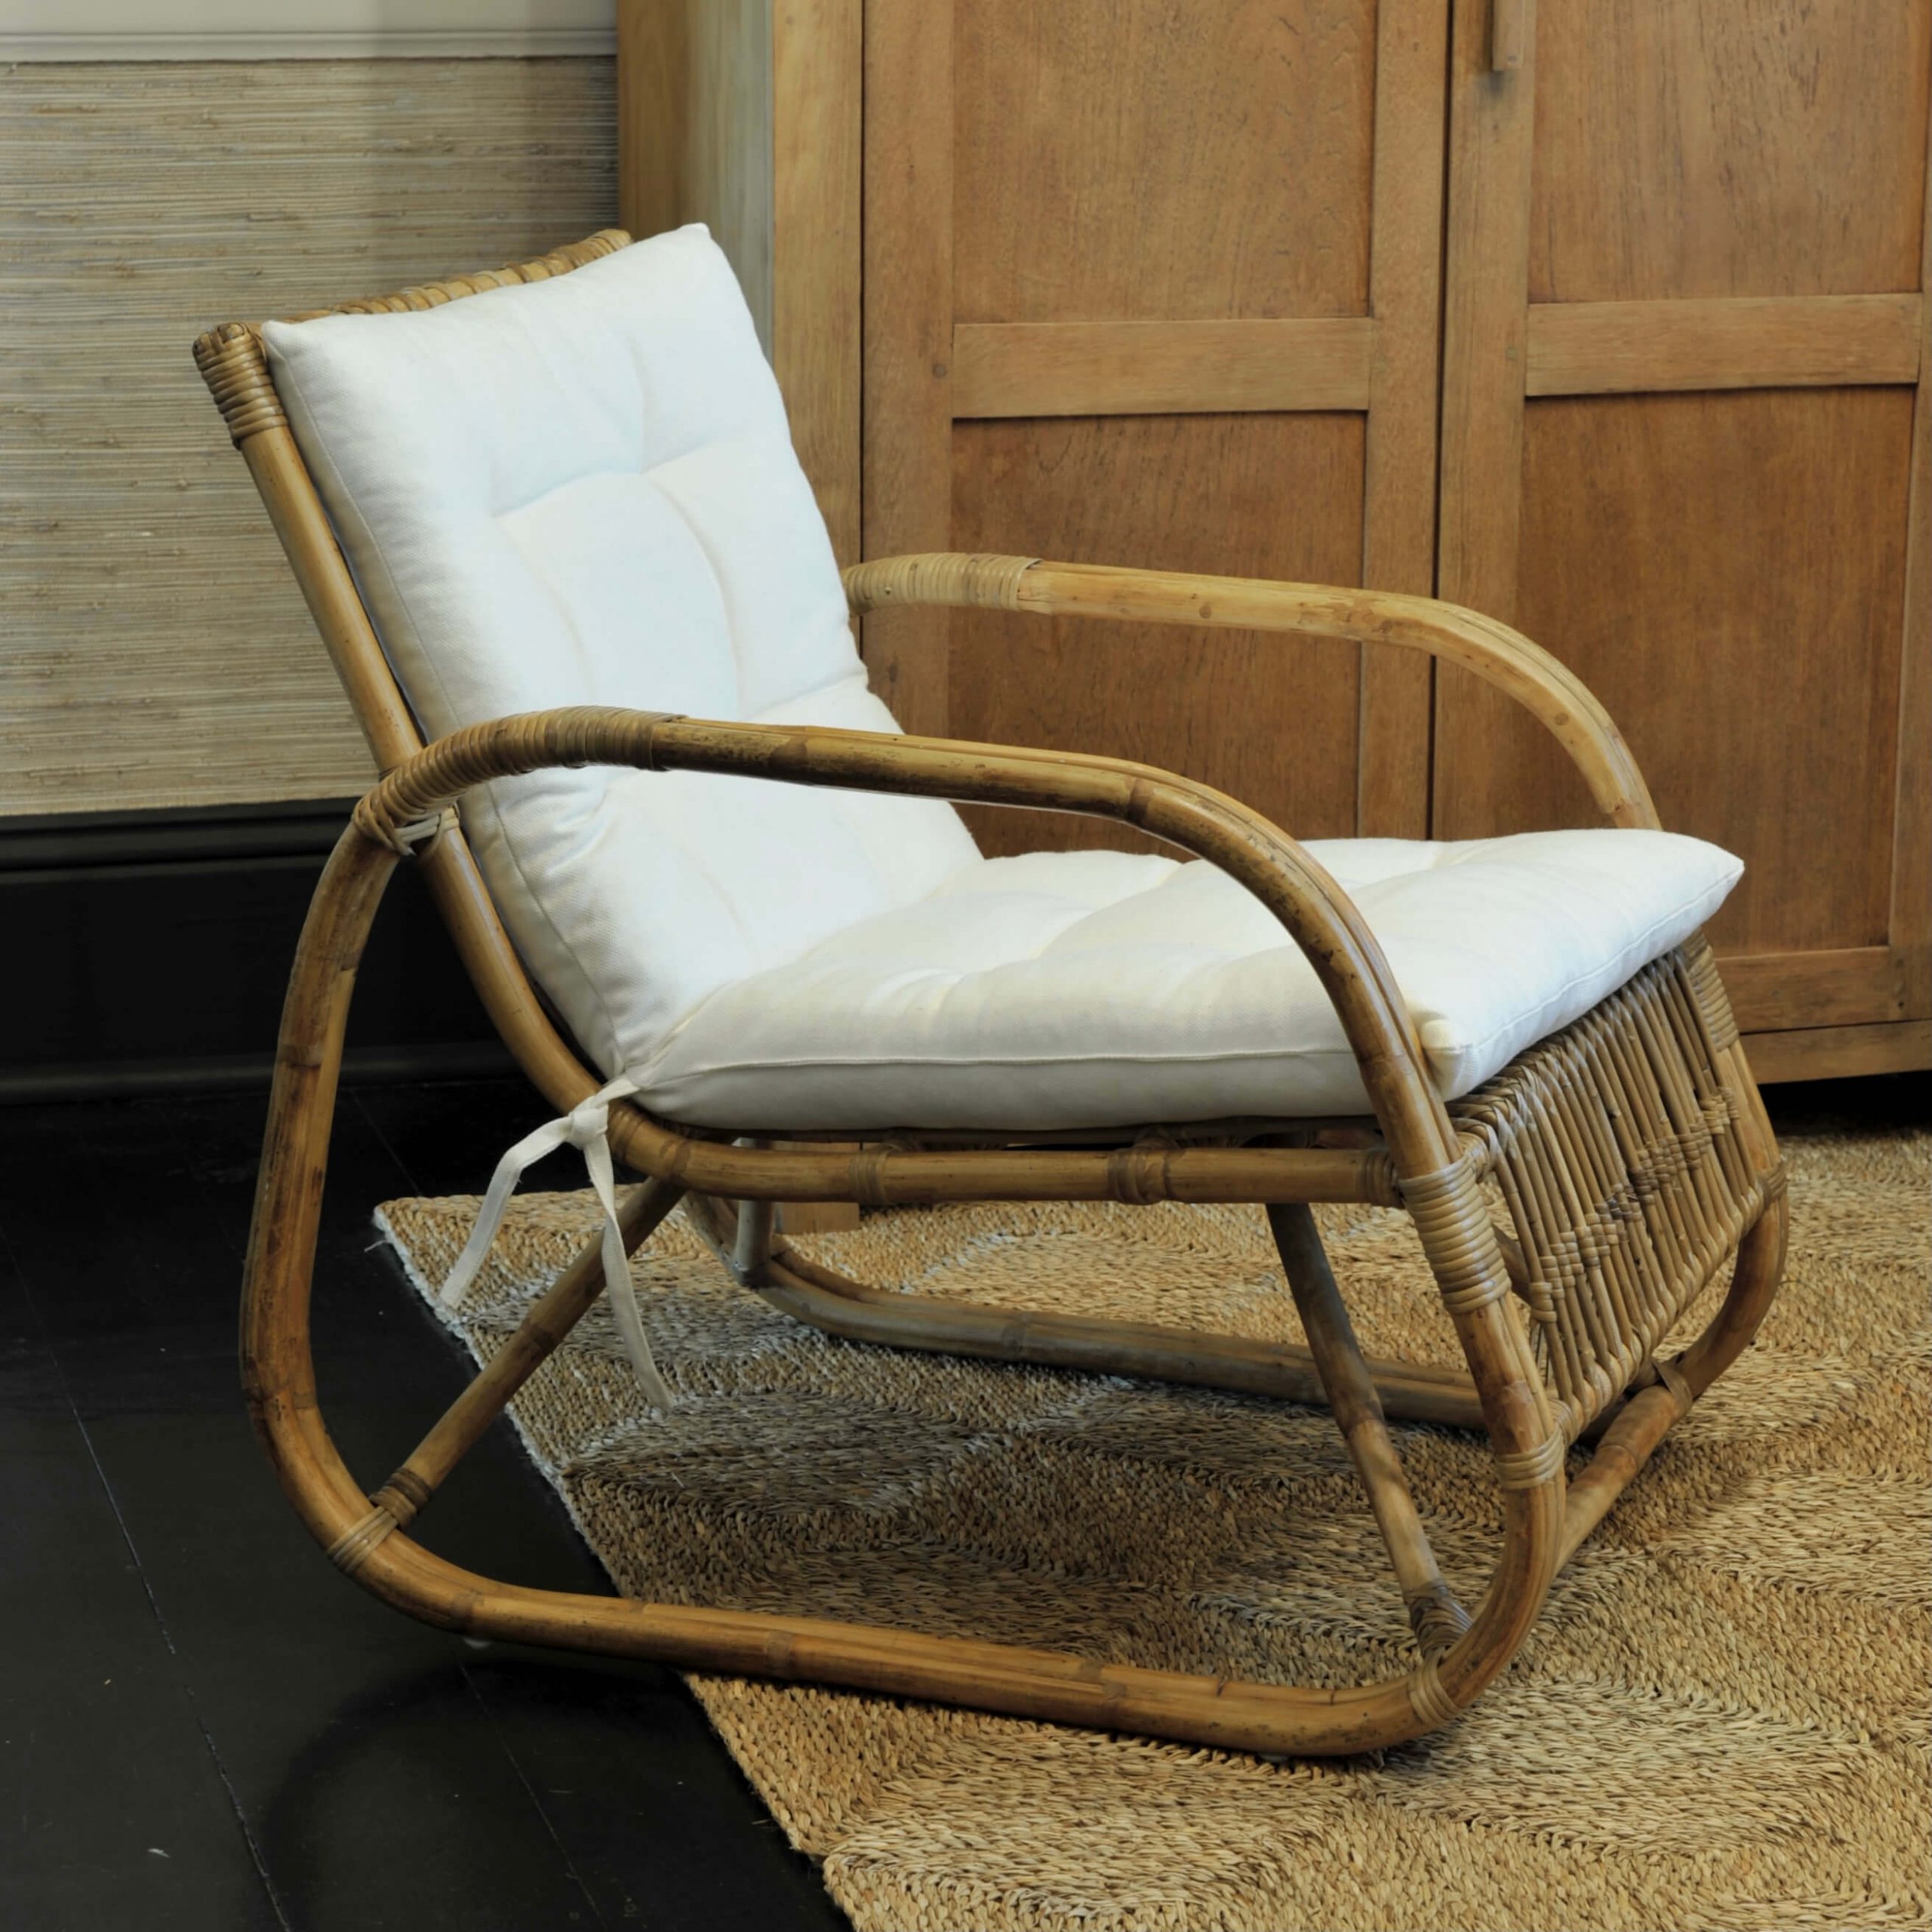 Cane Chair with Cream Cushion